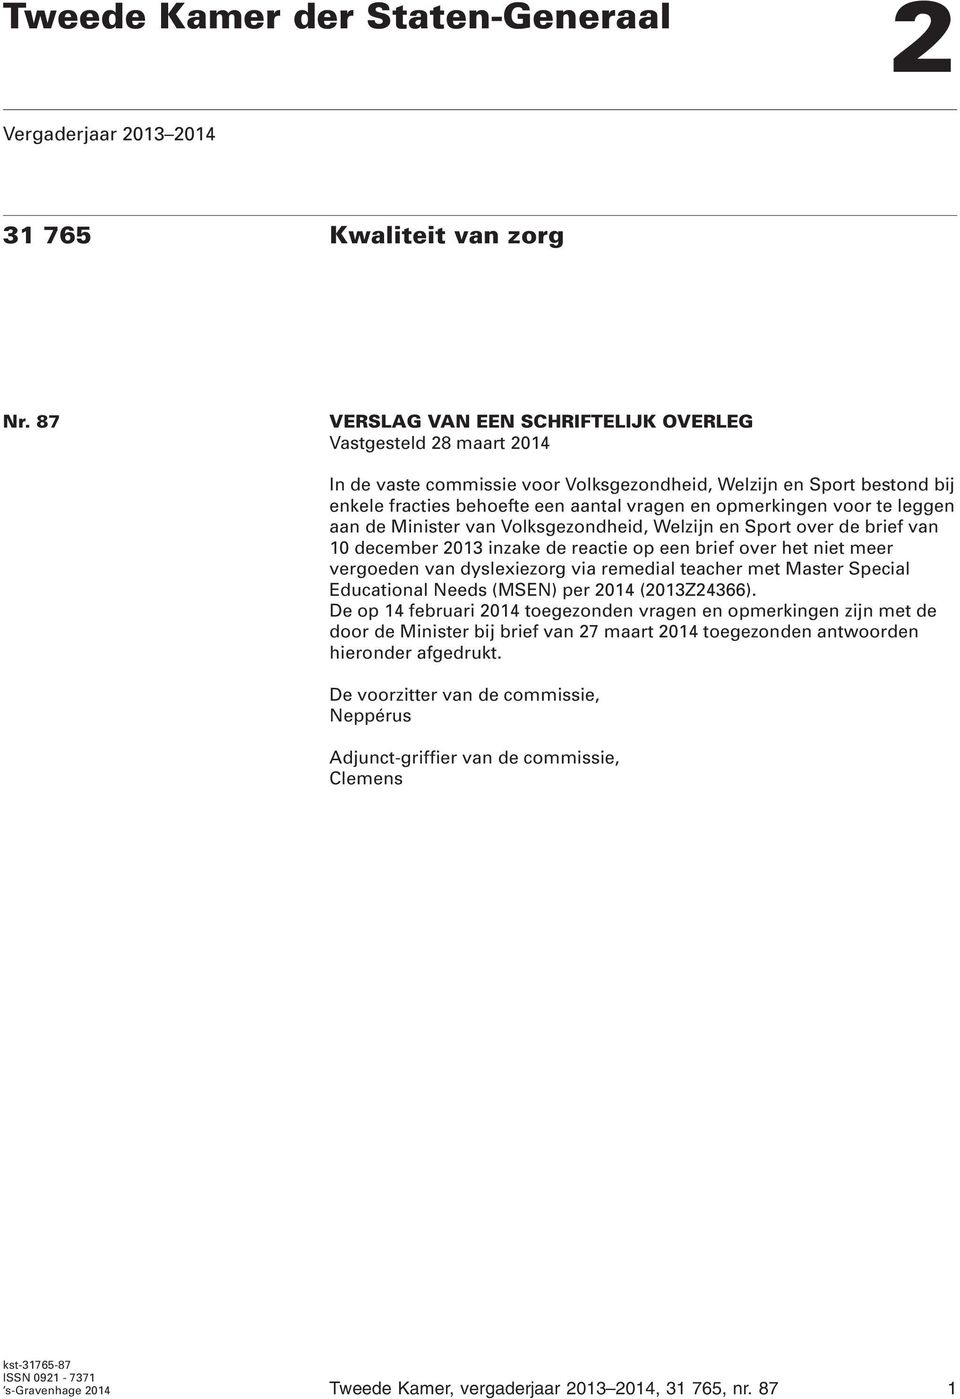 voor te leggen aan de Minister van Volksgezondheid, Welzijn en Sport over de brief van 10 december 2013 inzake de reactie op een brief over het niet meer vergoeden van dyslexiezorg via remedial